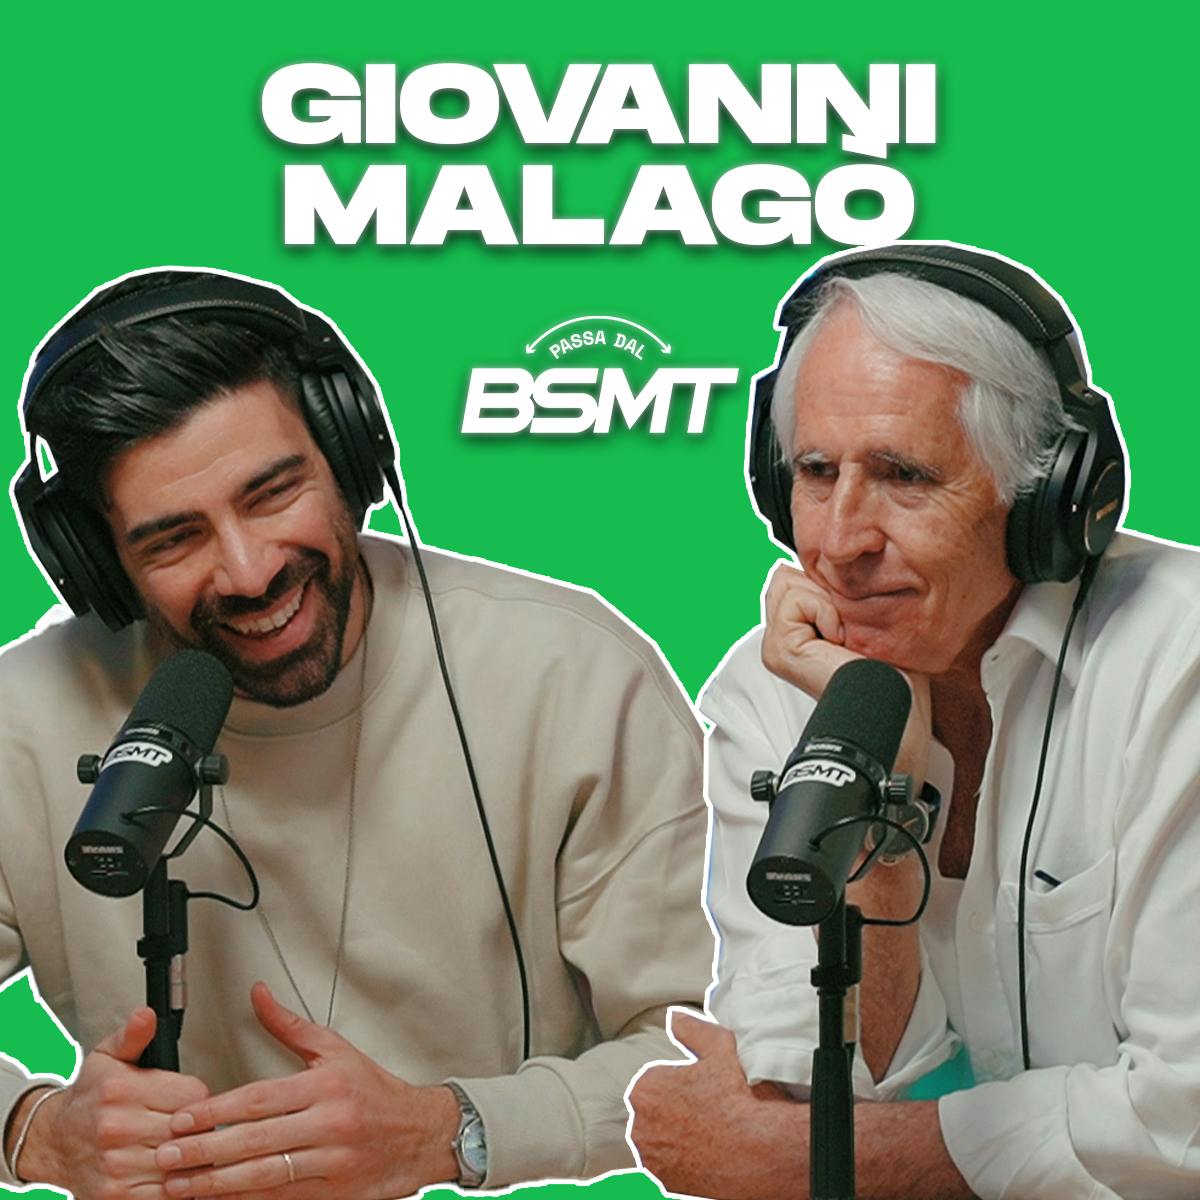 GIOVANNI MALAGÒ | La cultura sportiva in Italia! 🇮🇹 | Passa dal BSMT _ S03E75